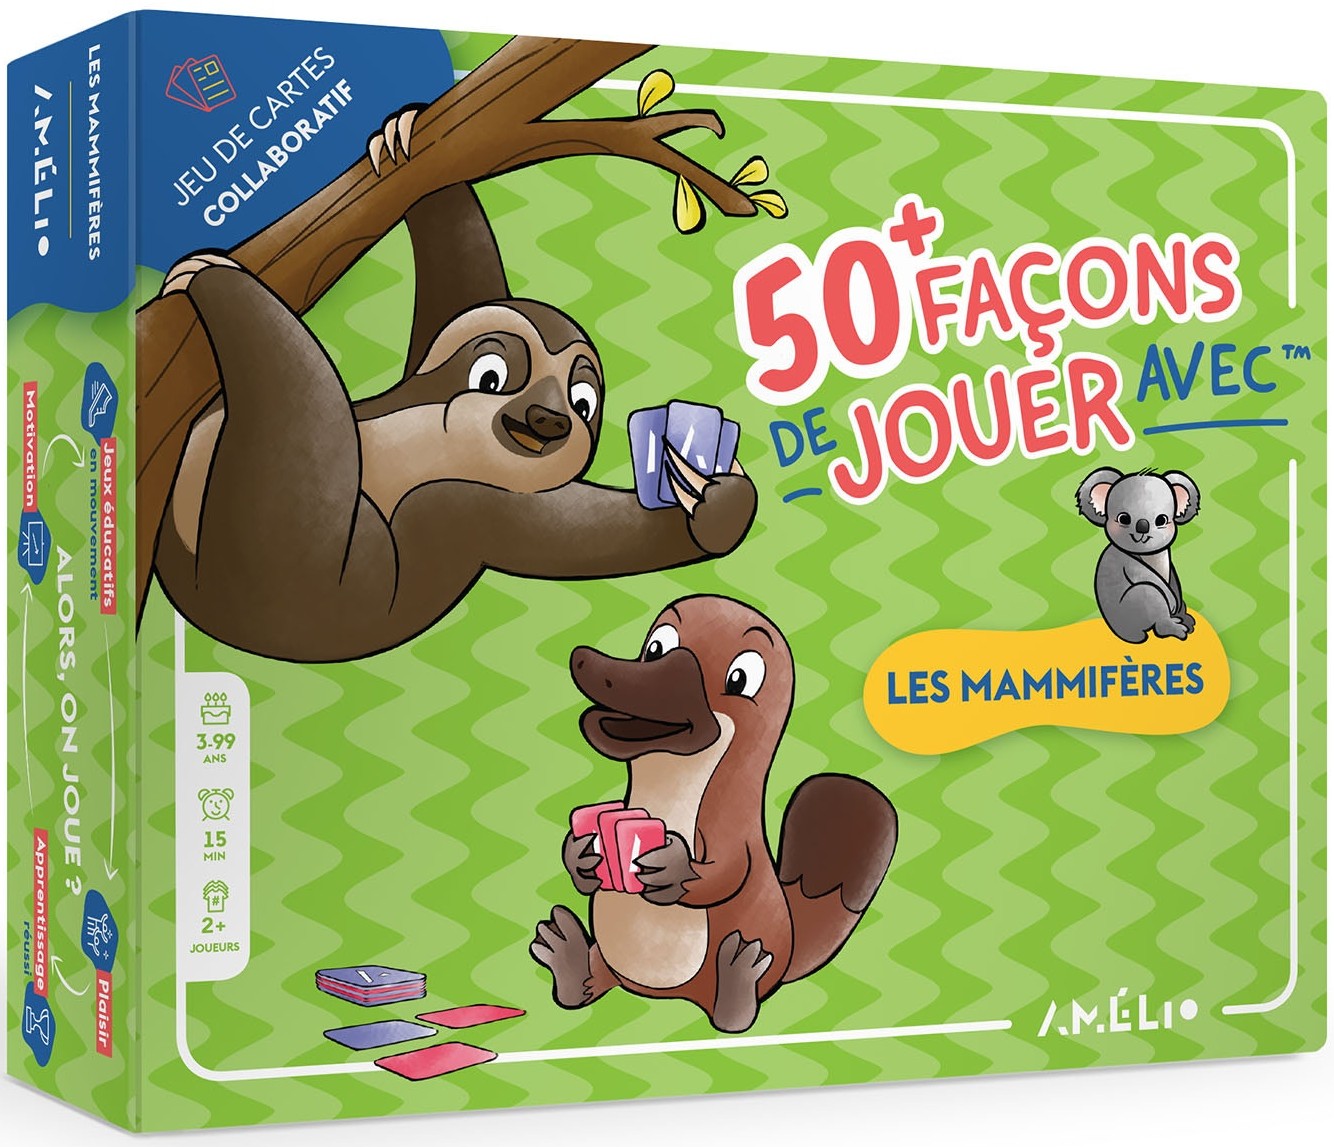 Boîte du jeu 50+ Façon de jouer avec les mammifères